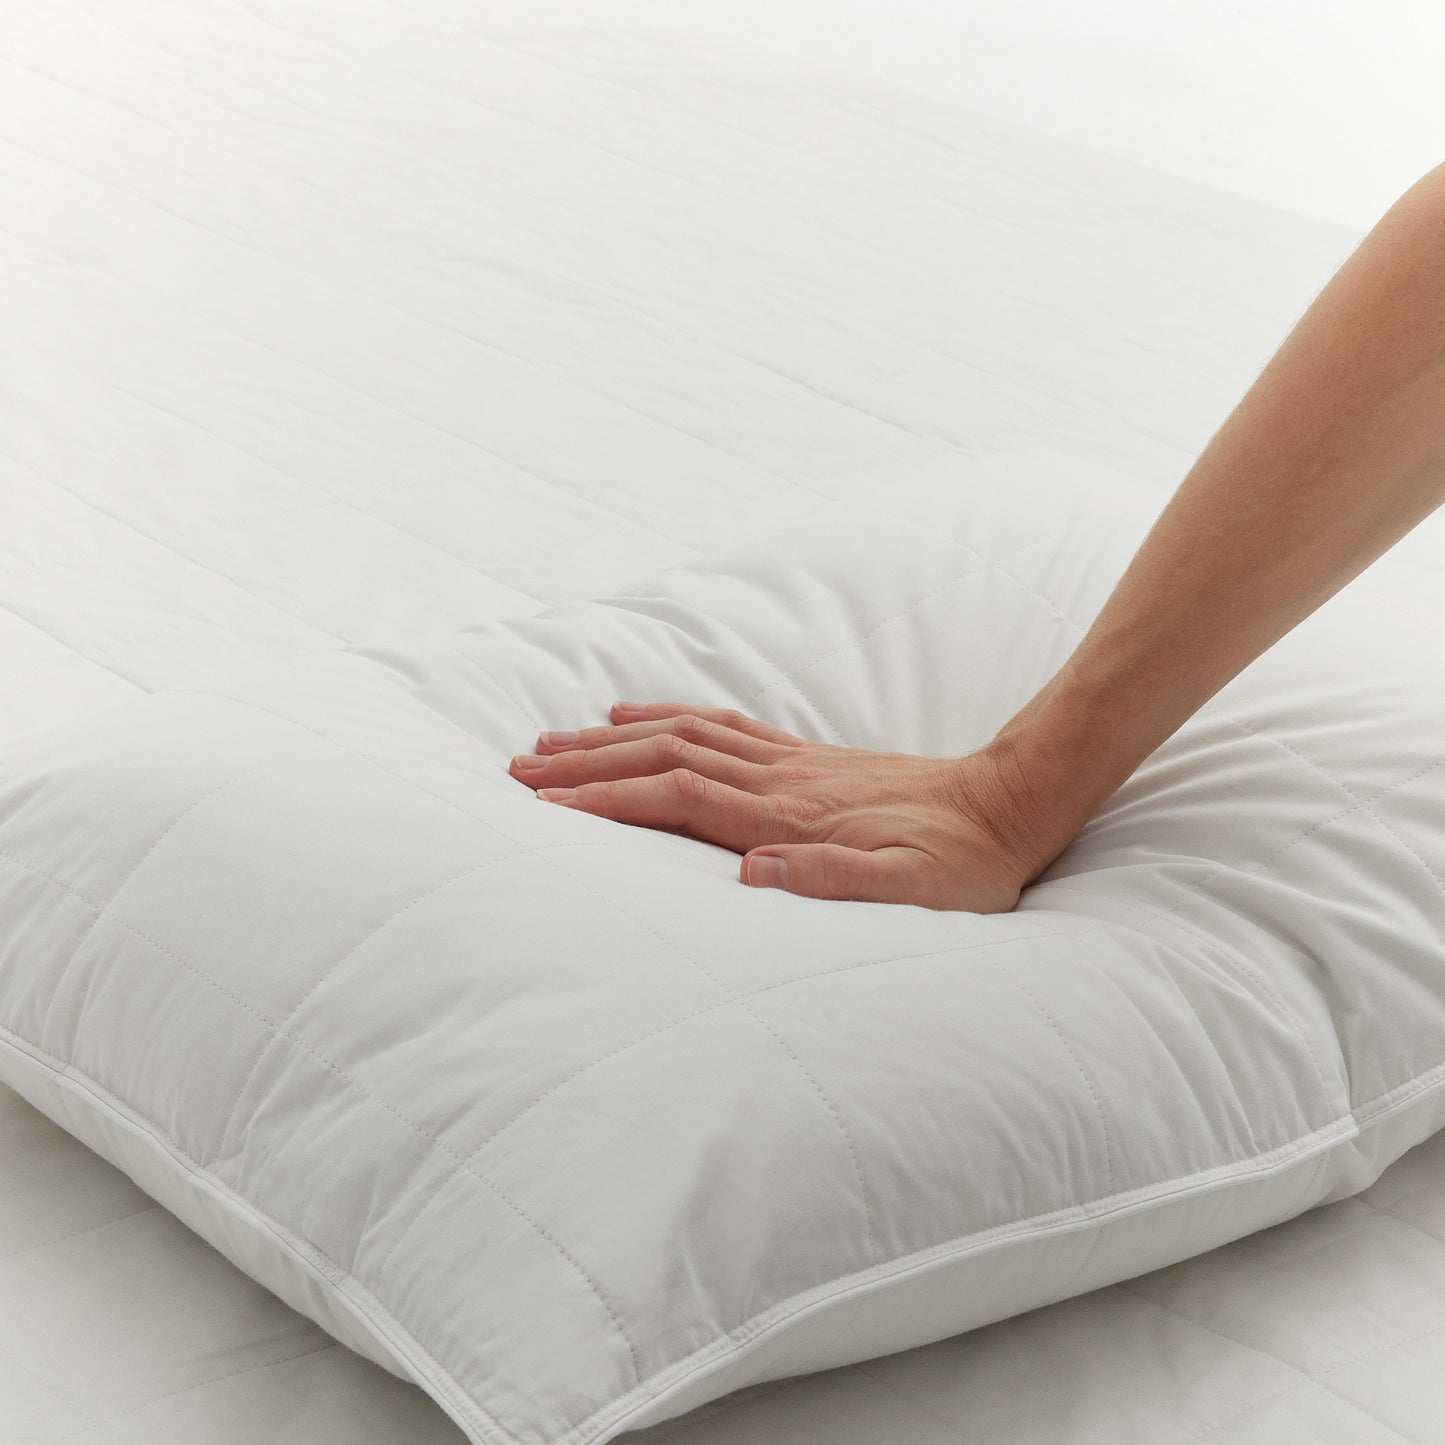 Silk Lined Pillow